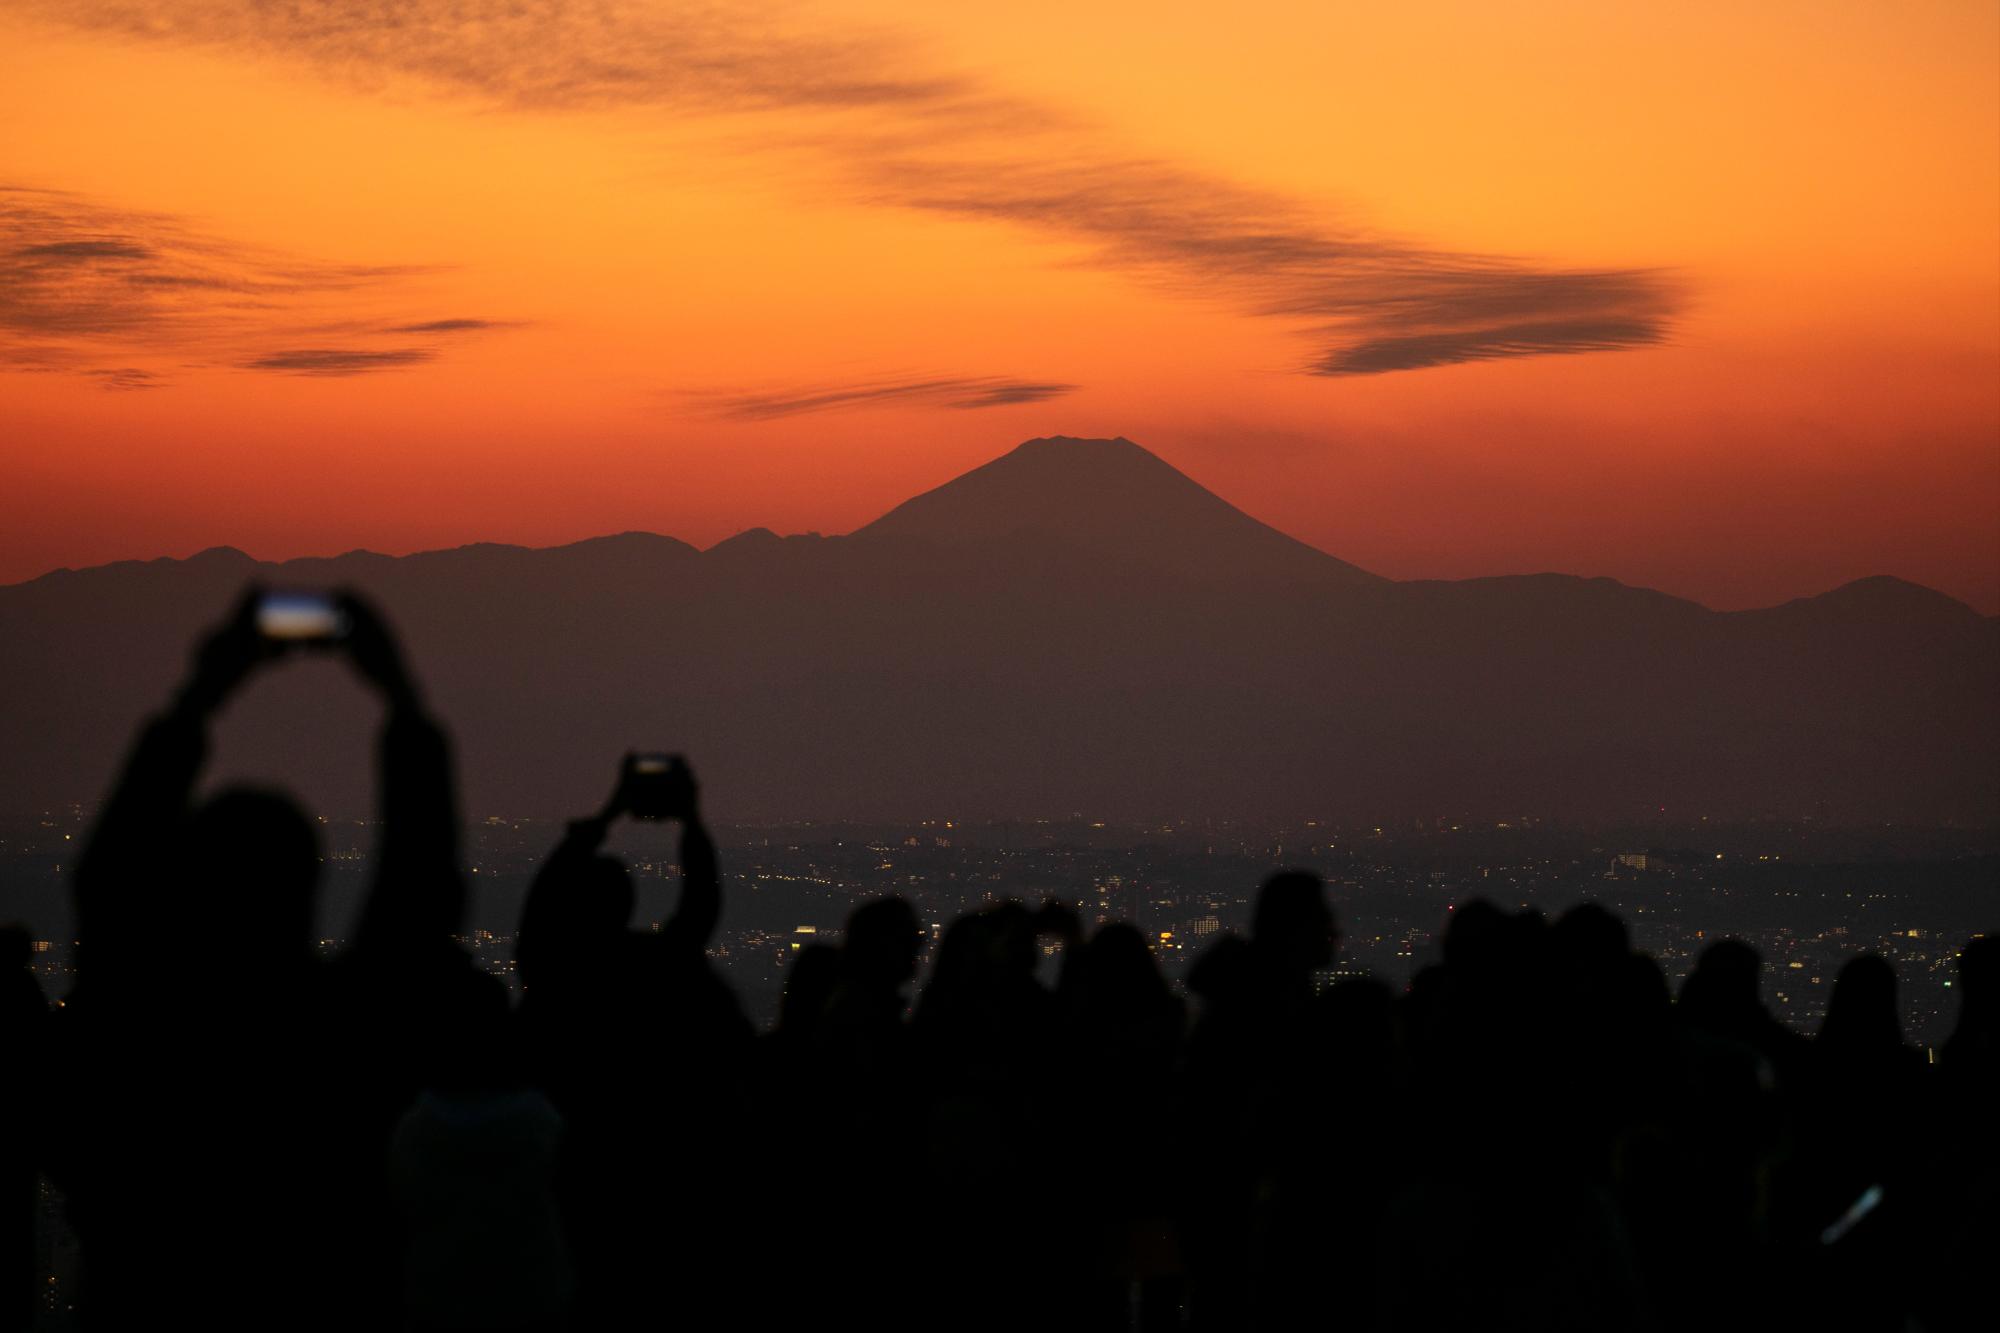 Los visitantes toman fotos del monte Fuji desde la plataforma de observación del cielo de Shibuya el lunes 20 de enero de 2020, en el distrito de Shibuya de Tokio. Ubicado en la azotea de Shibuya Scramble Square, un rascacielos de 47 pisos, el observatorio es la plataforma de observación al aire libre más nueva de Tokio, con vistas al famoso cruce de Shibuya. 